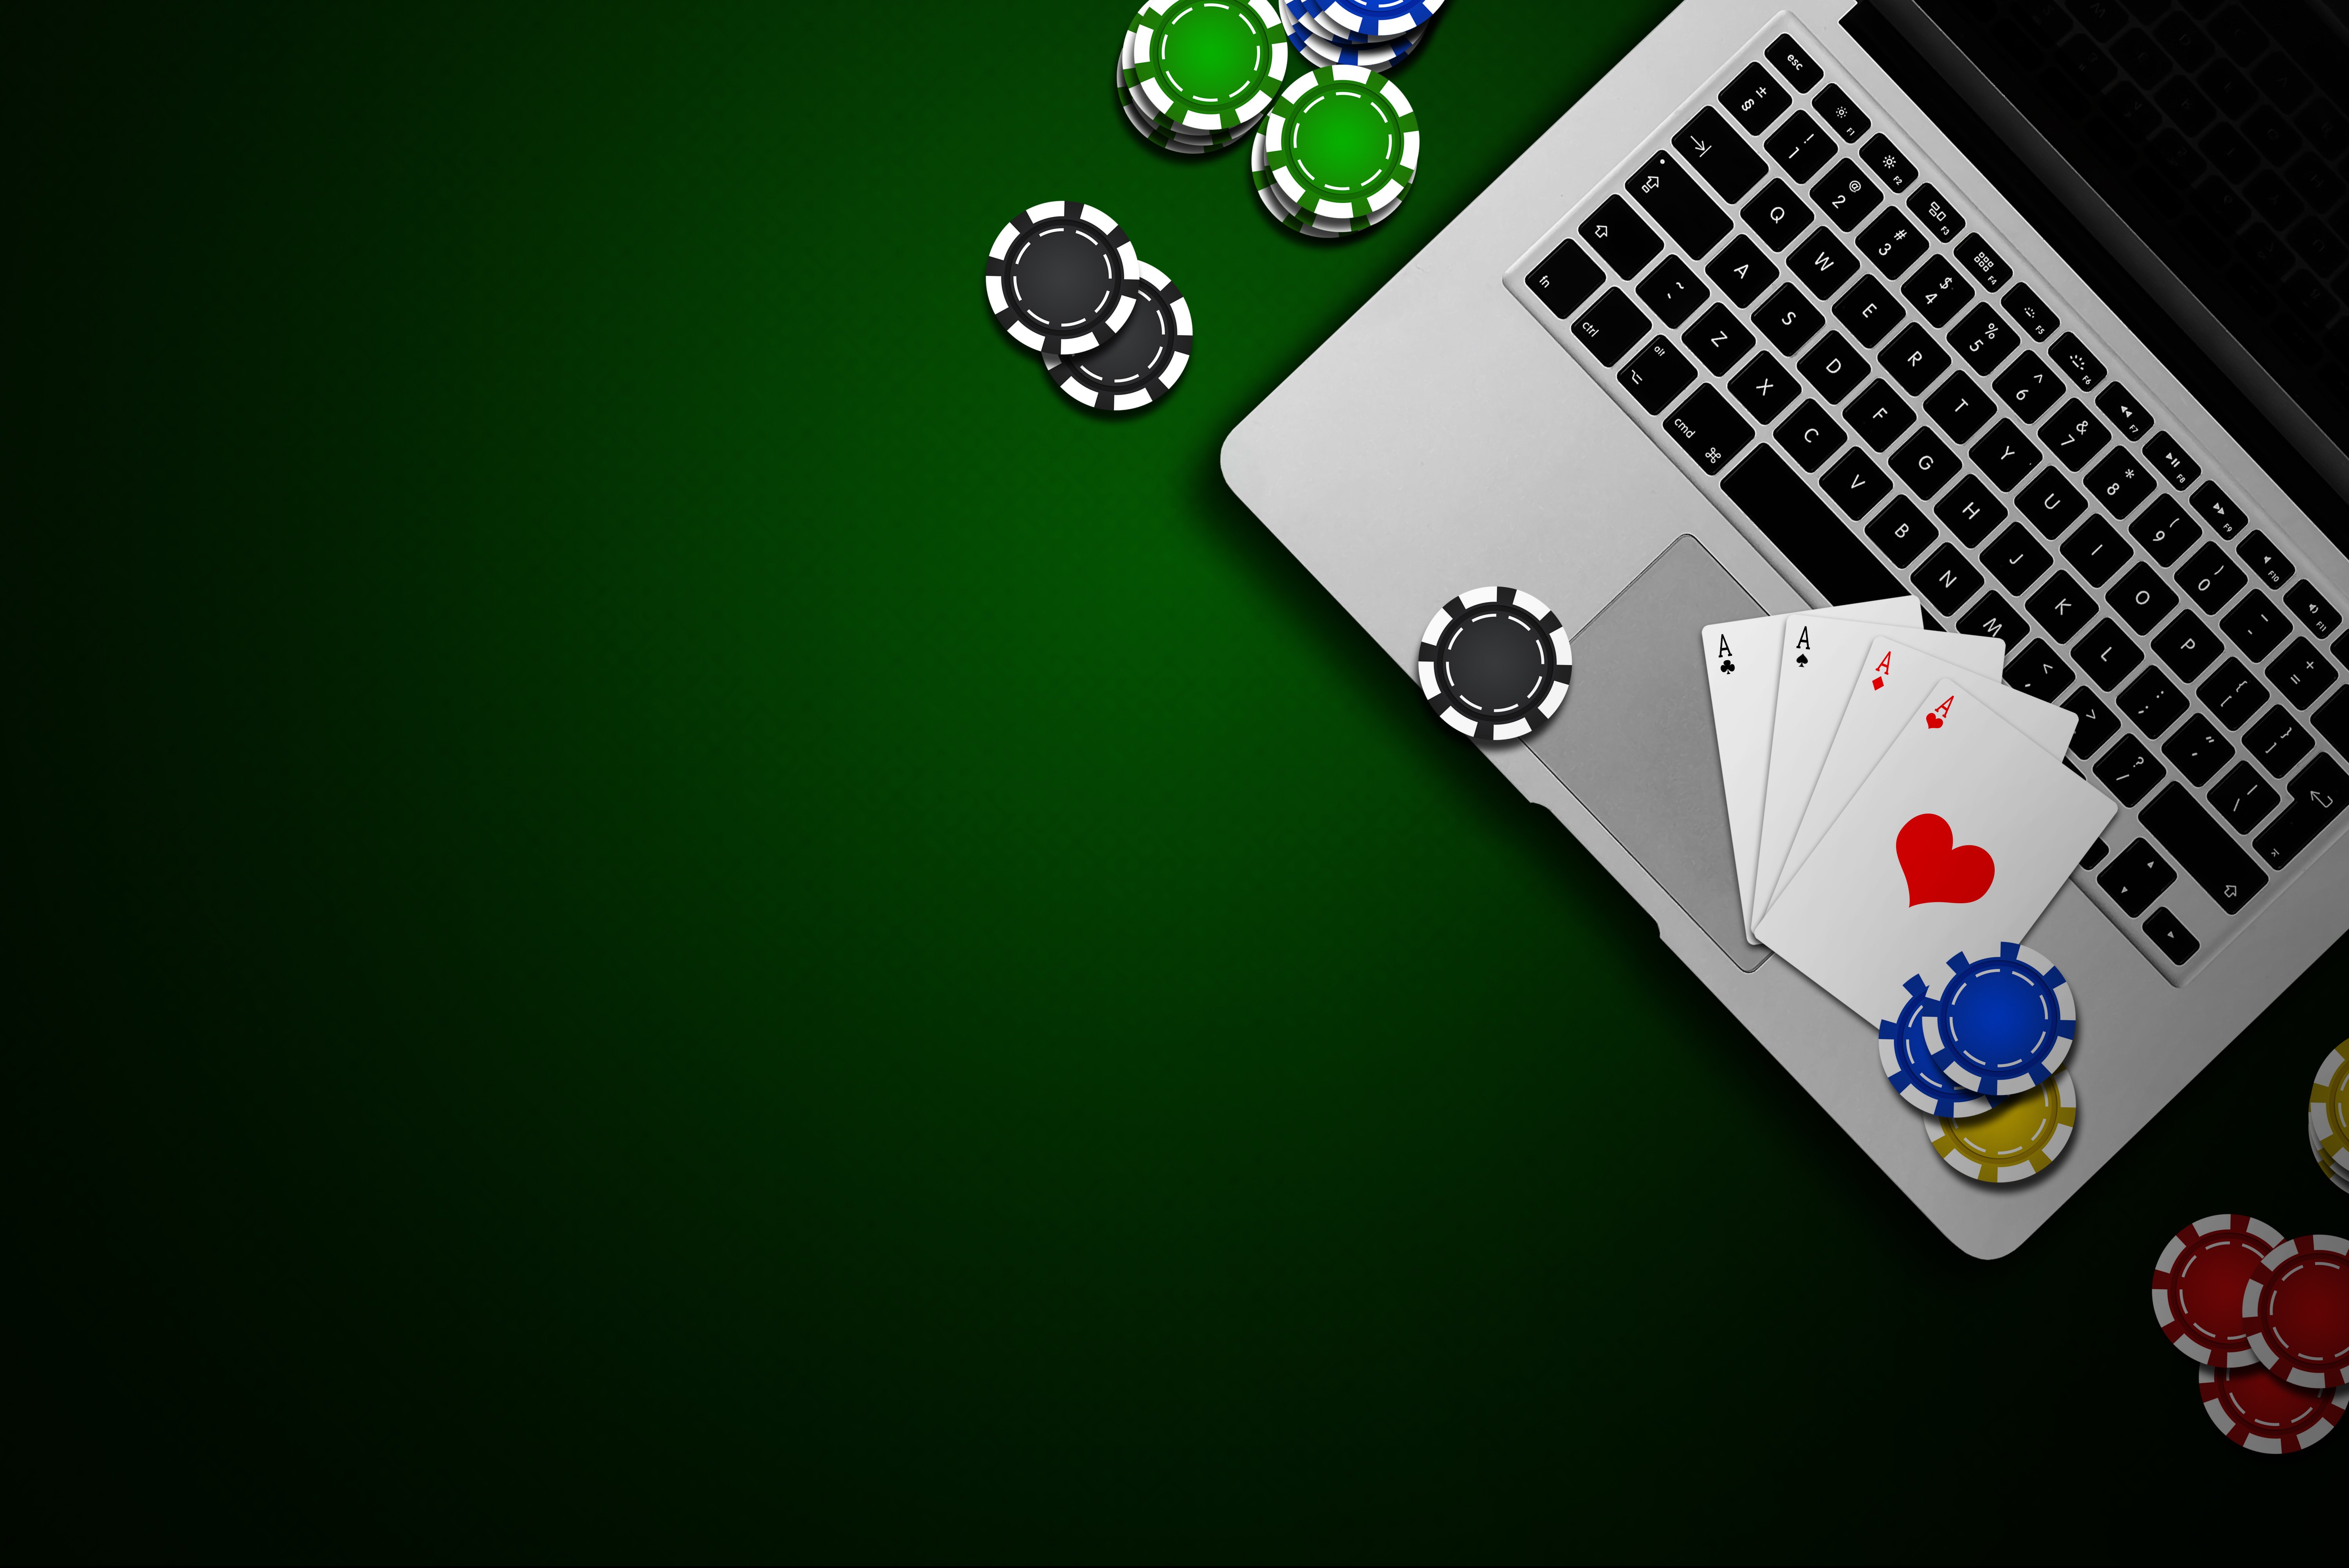 die besten online casinos - Wie kann man produktiver sein?